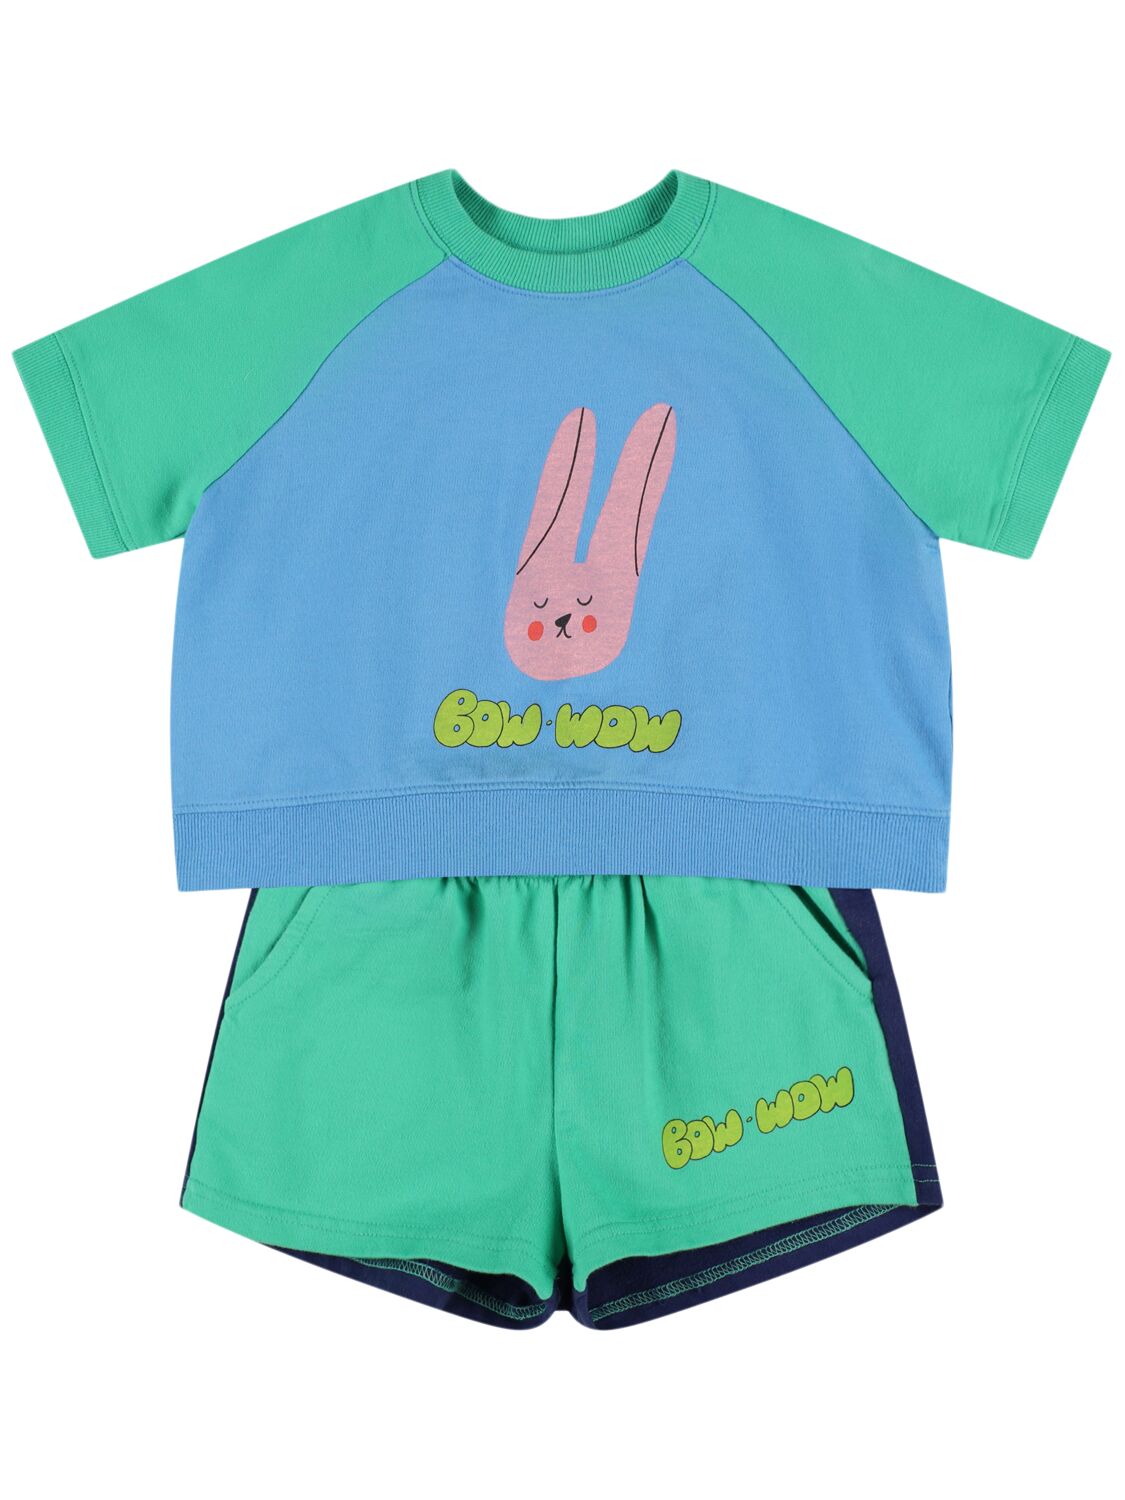 Jellymallow Babies' Cotton Jersey T-shirt & Sweat Shorts In Light Green